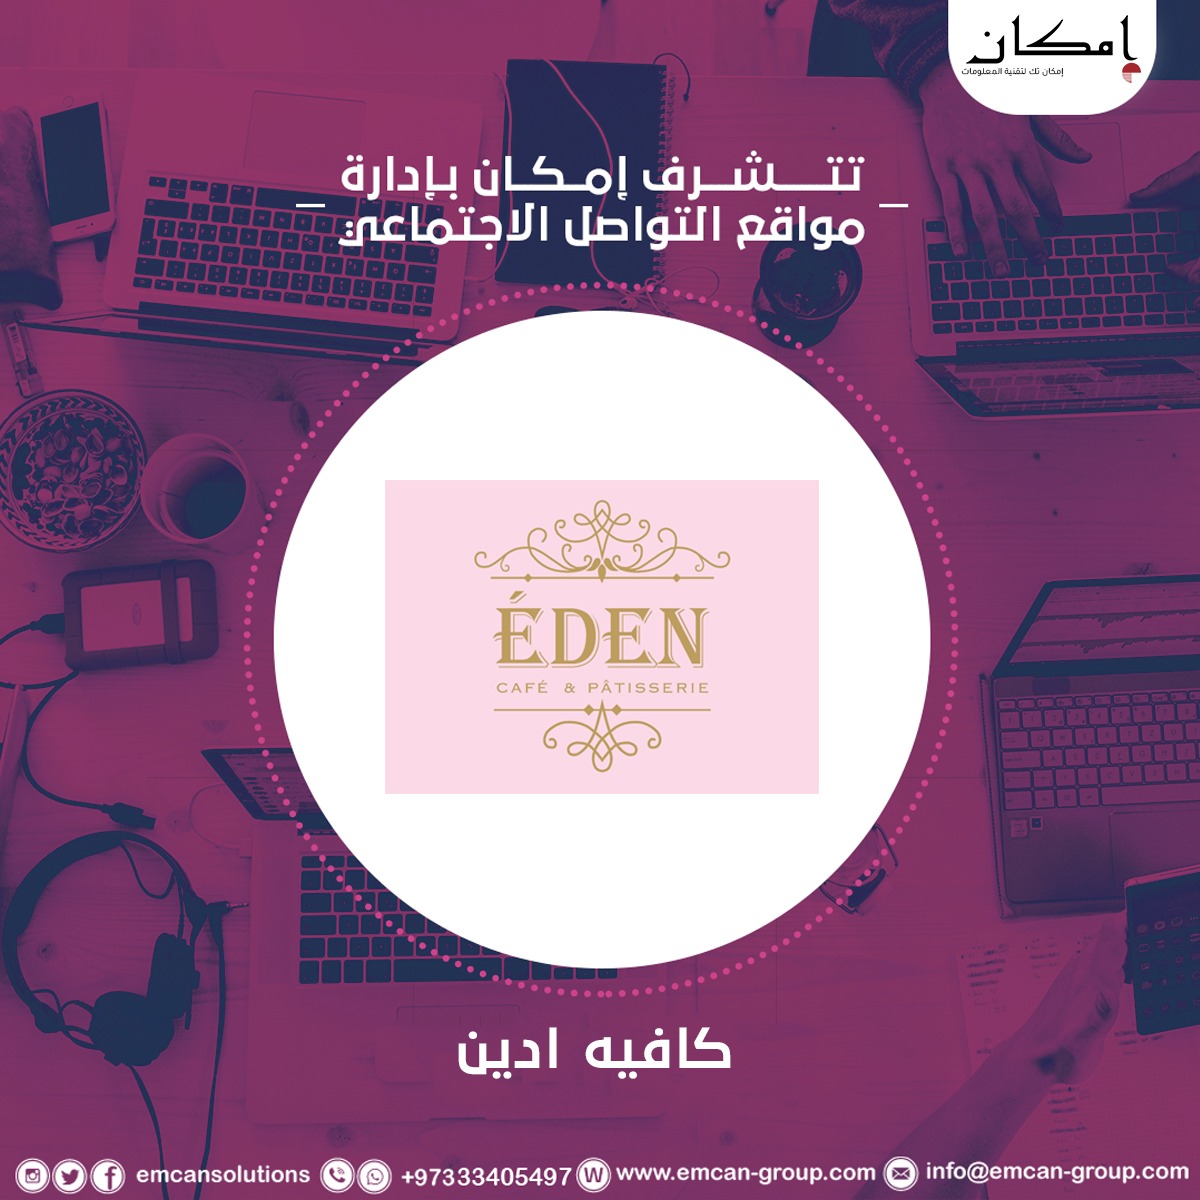 Social media management for Café Eden